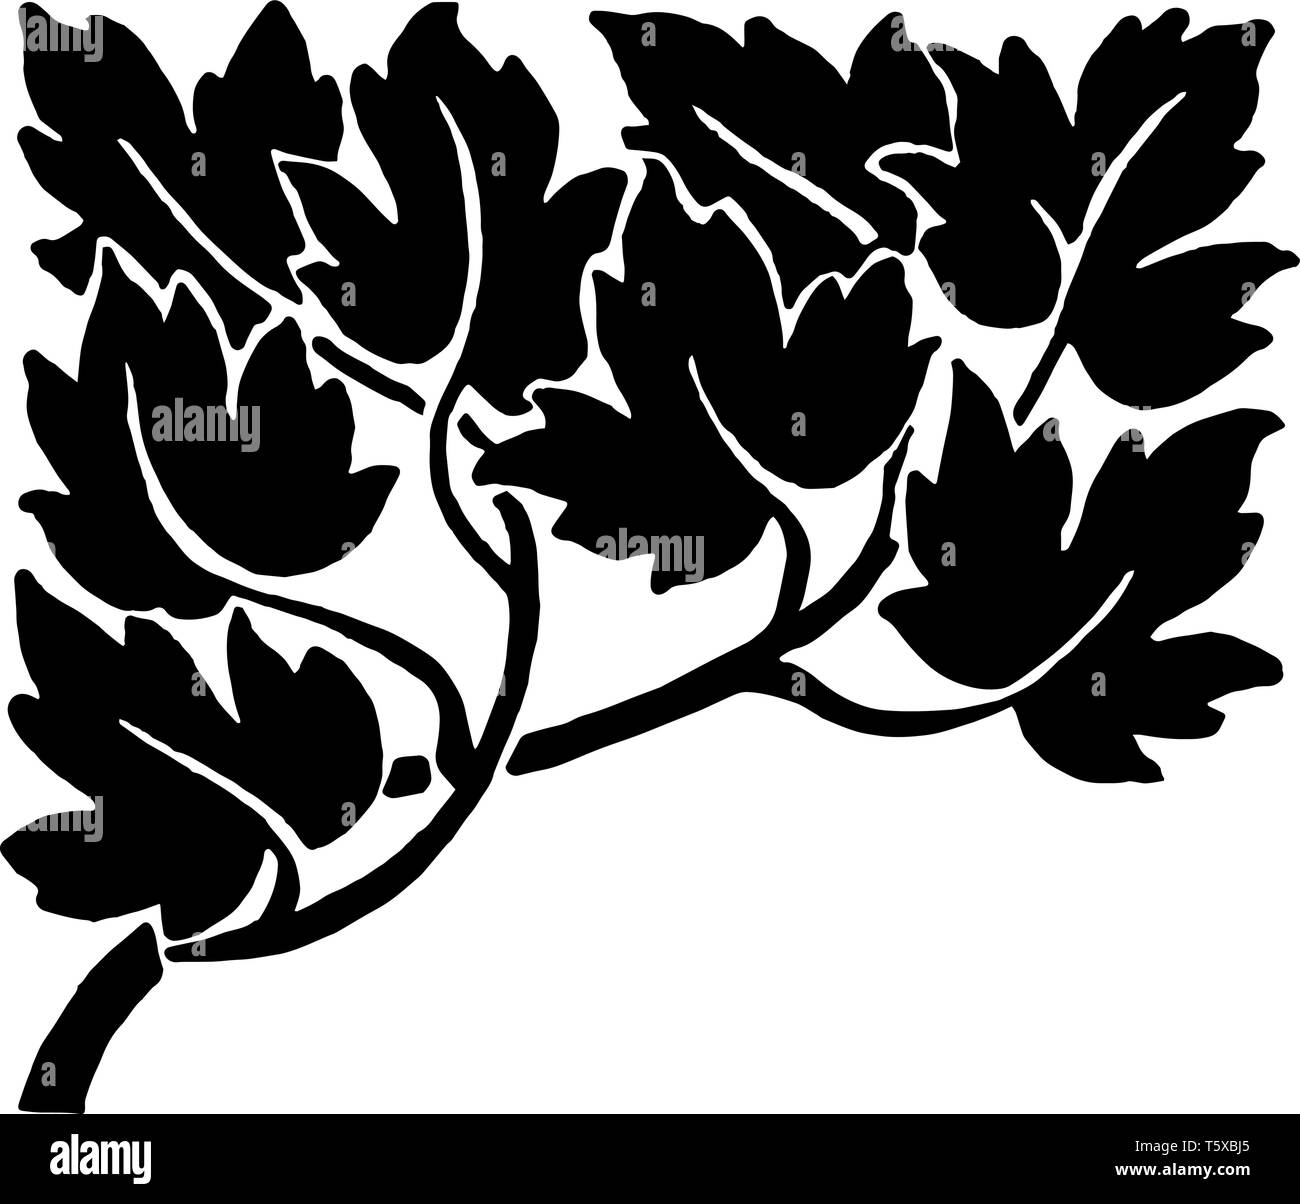 Diviseur de feuillus ont des feuilles dans son design vintage dessin ou gravure illustration. Illustration de Vecteur